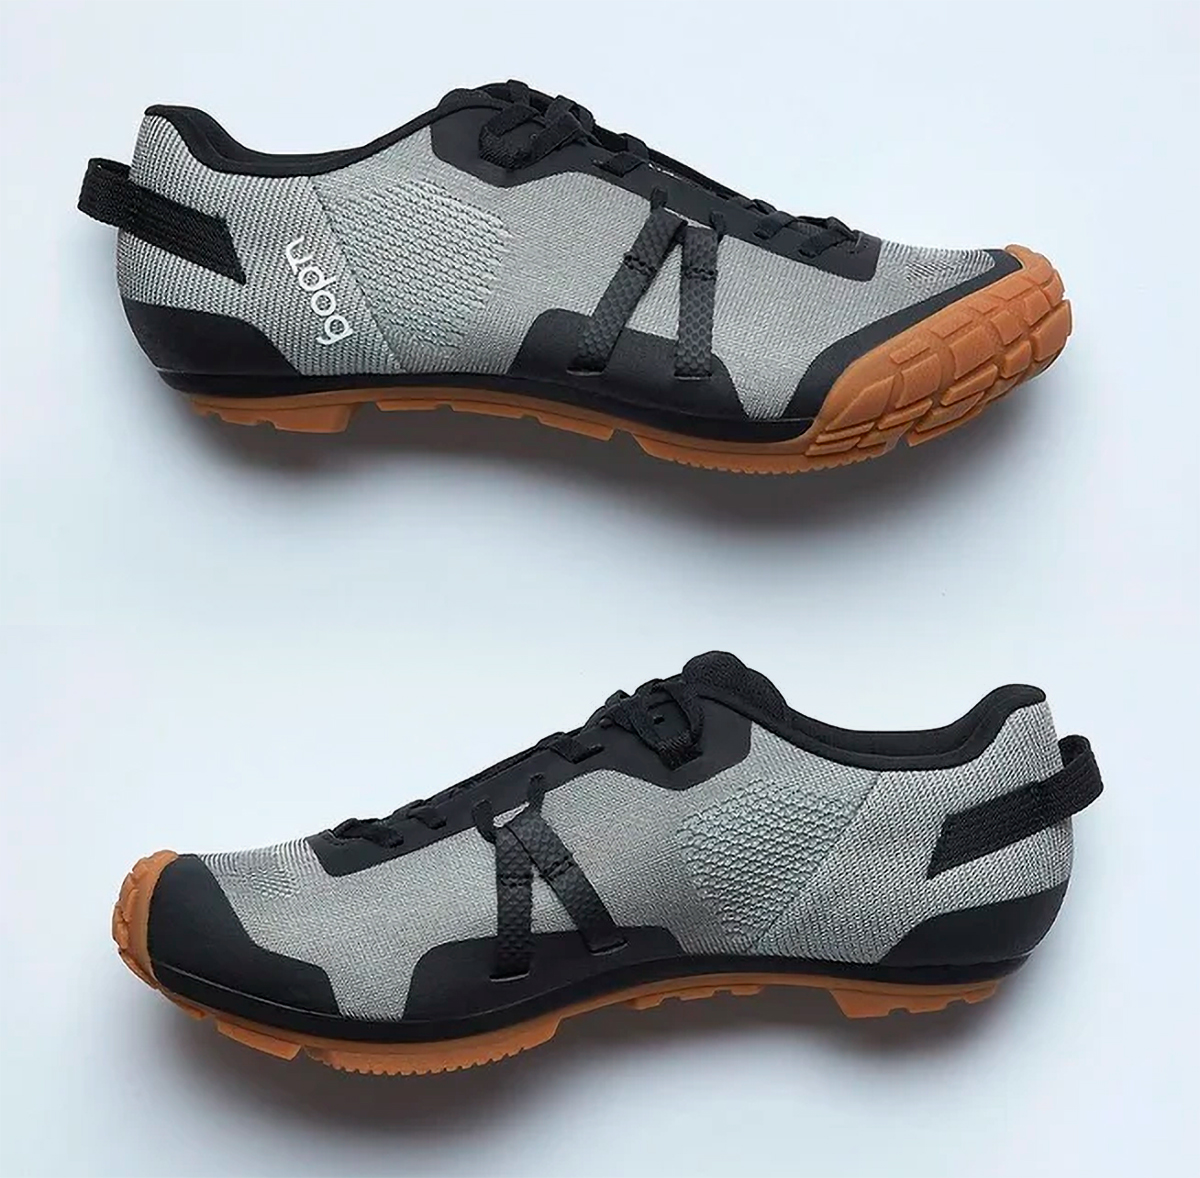 Udog Distanza, unas zapatillas para gravel con una suela envolvente que promete una gran durabilidad y comodidad